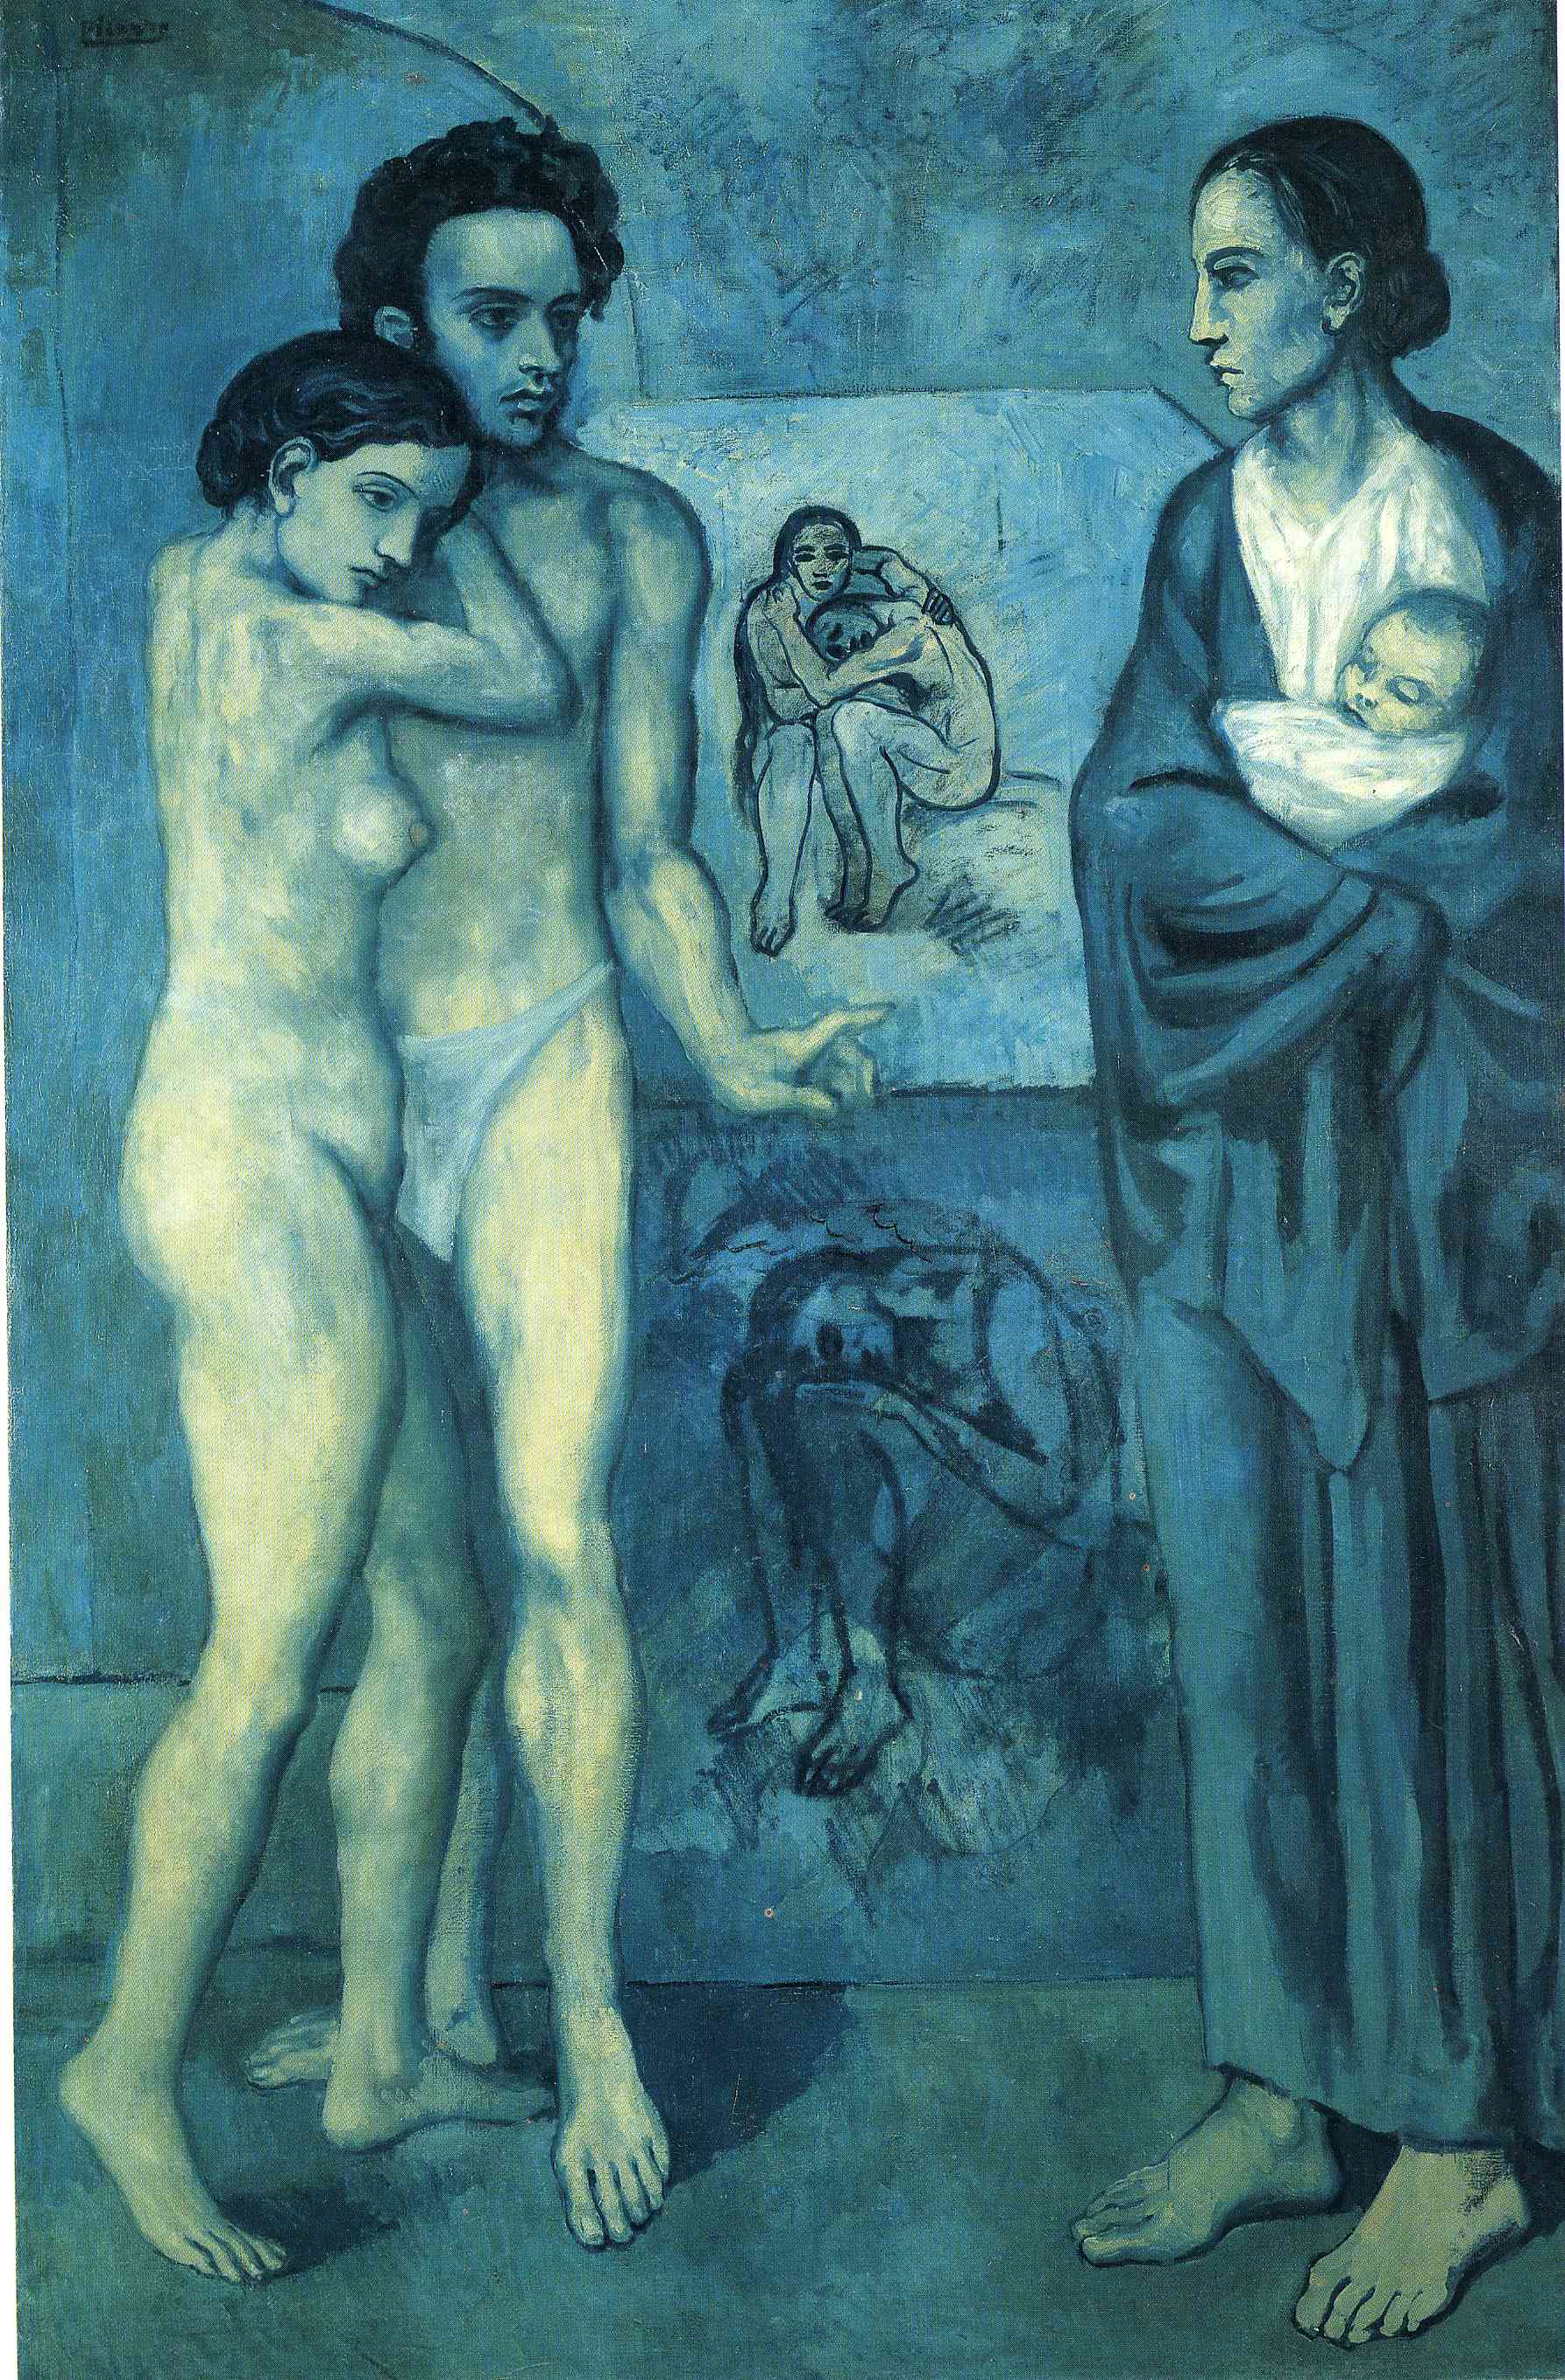 La Vie by Pablo Picasso (1903)